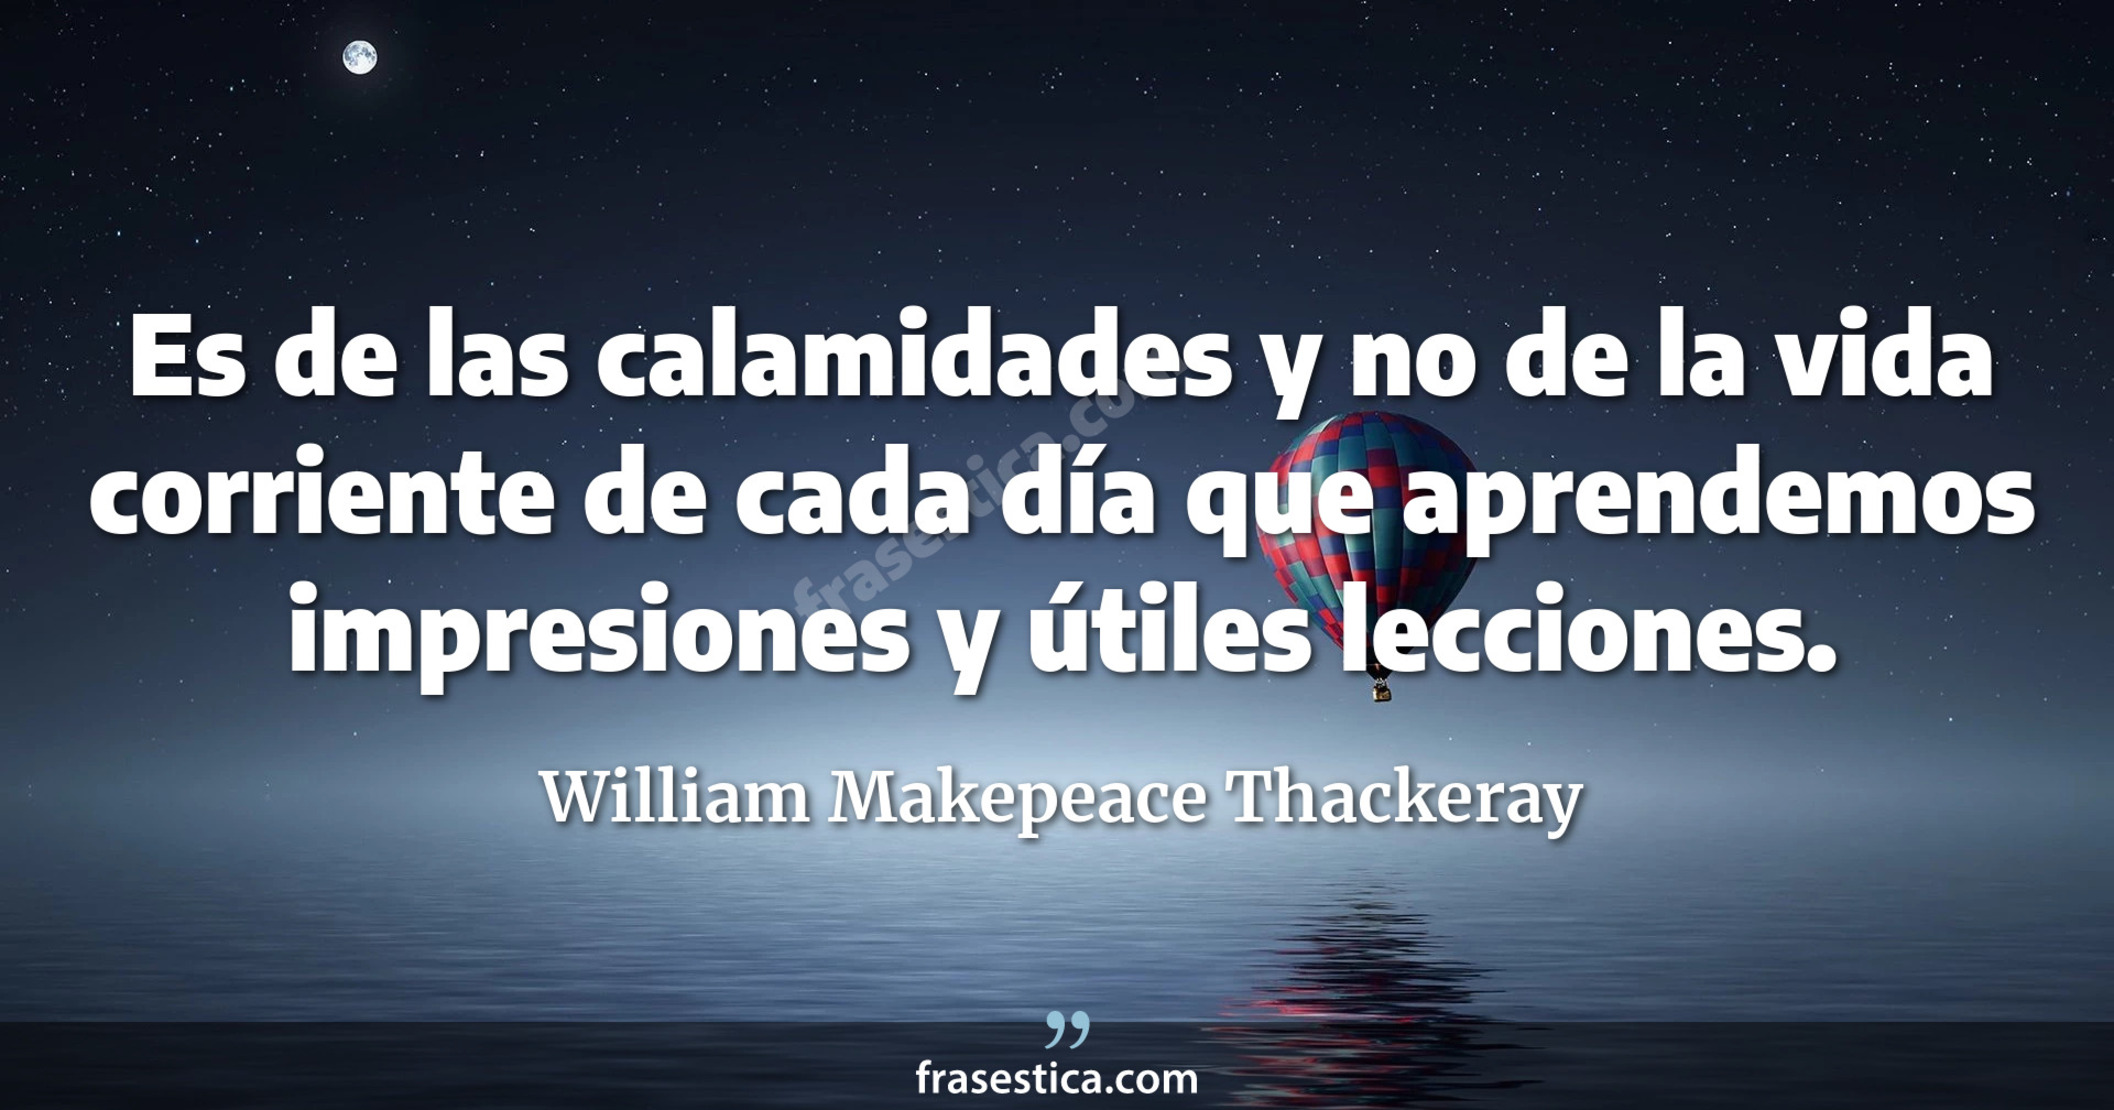 Es de las calamidades y no de la vida corriente de cada día que aprendemos impresiones y útiles lecciones. - William Makepeace Thackeray